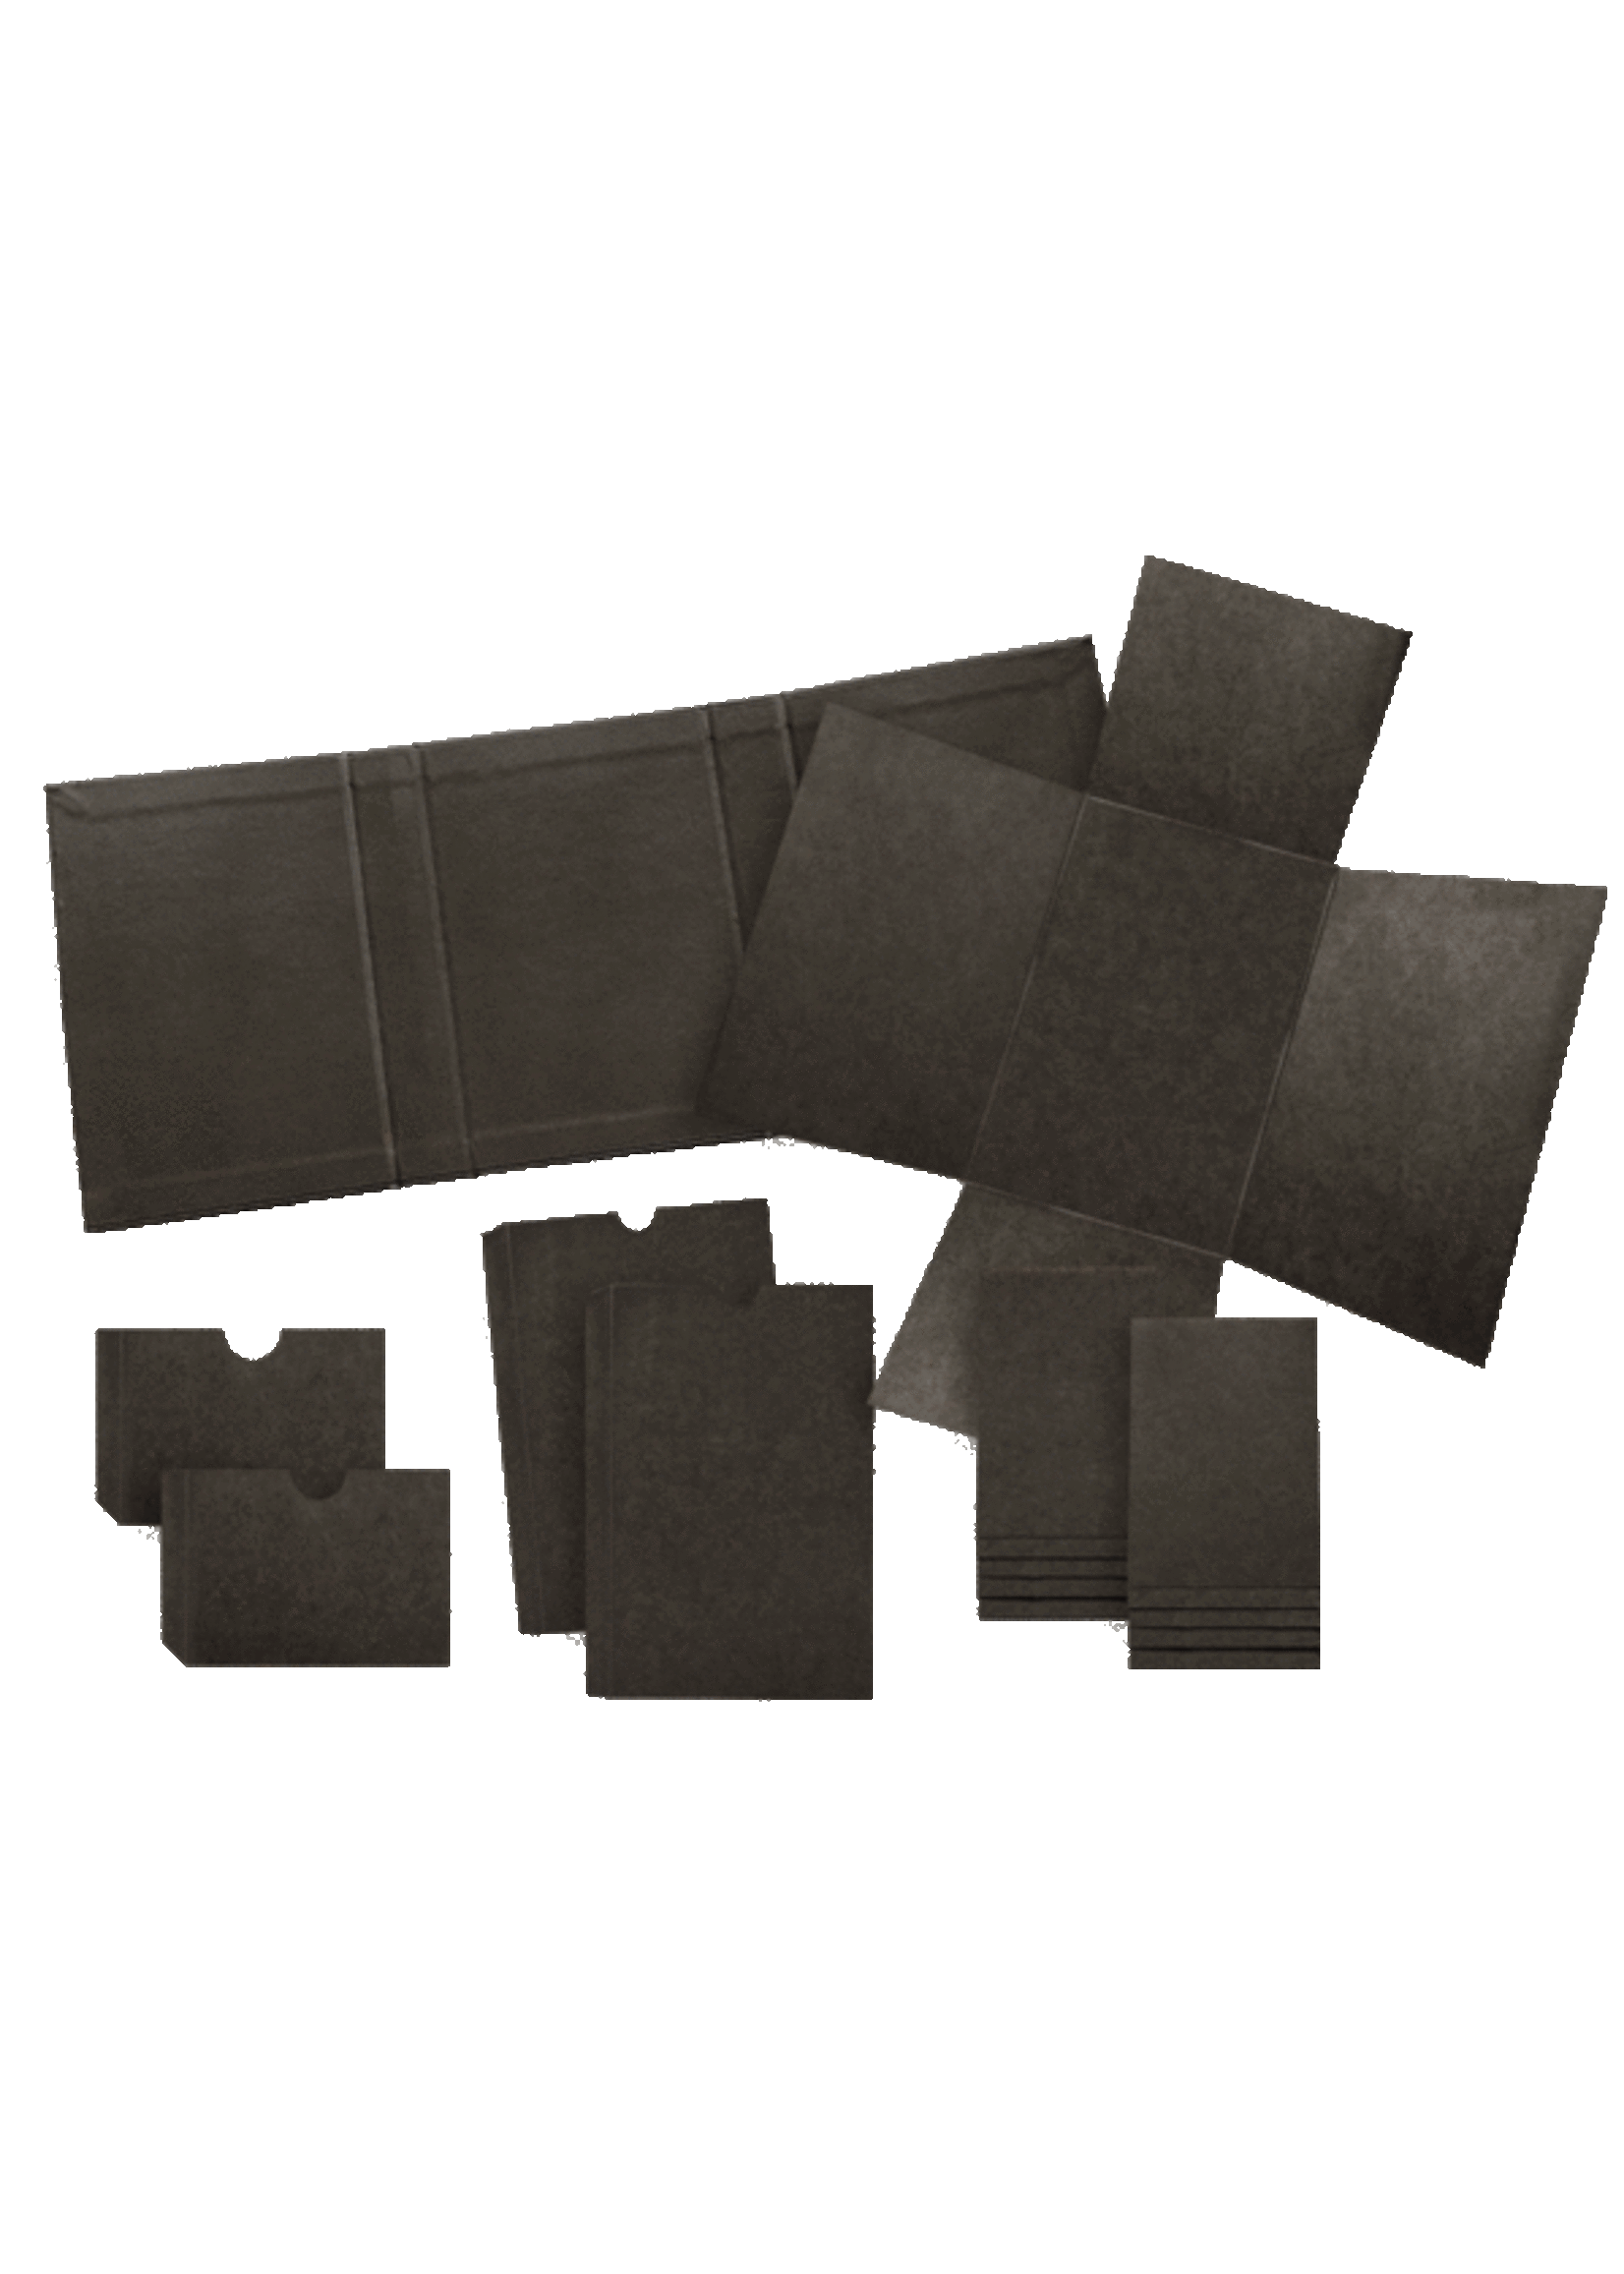 Graphic45 Interactive Folio Album Black (4502565